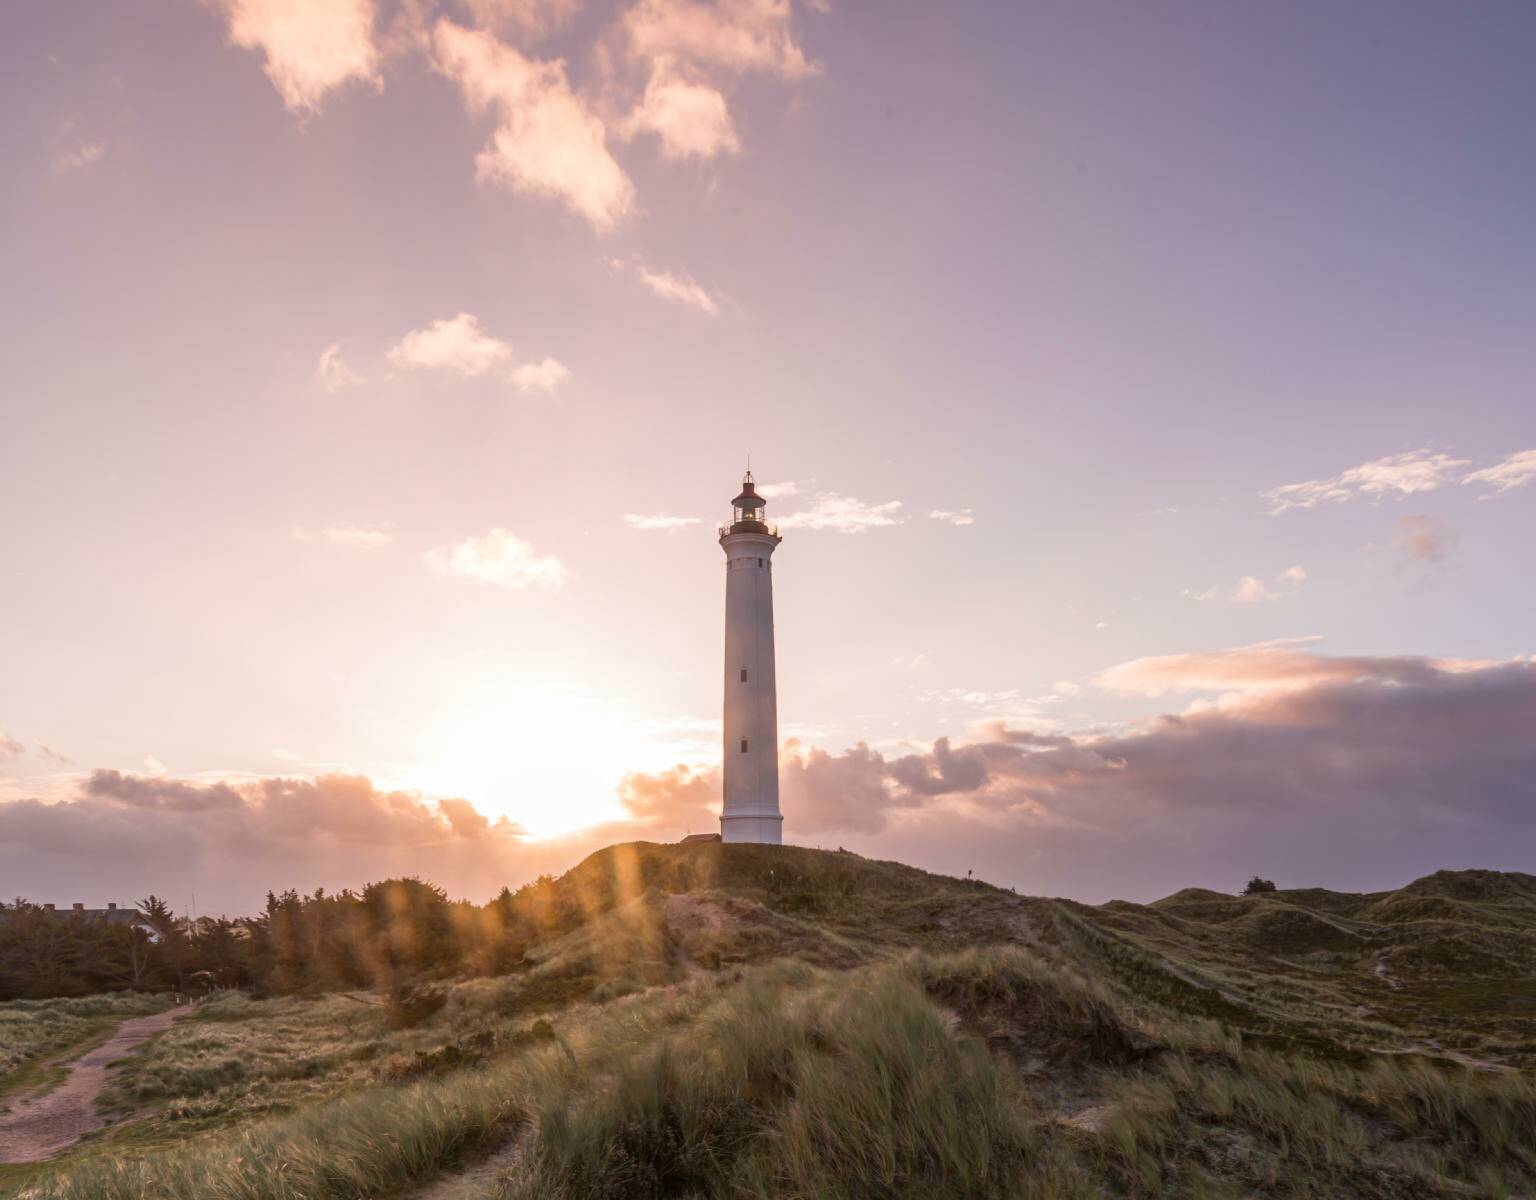 Eine wunderschöne Sehenswürdigkeit in Dänemarks Natur: Der Leuchtturm Lyngvig Fyr, besonders vor dem lila Himmel bei Sonnenuntergang.